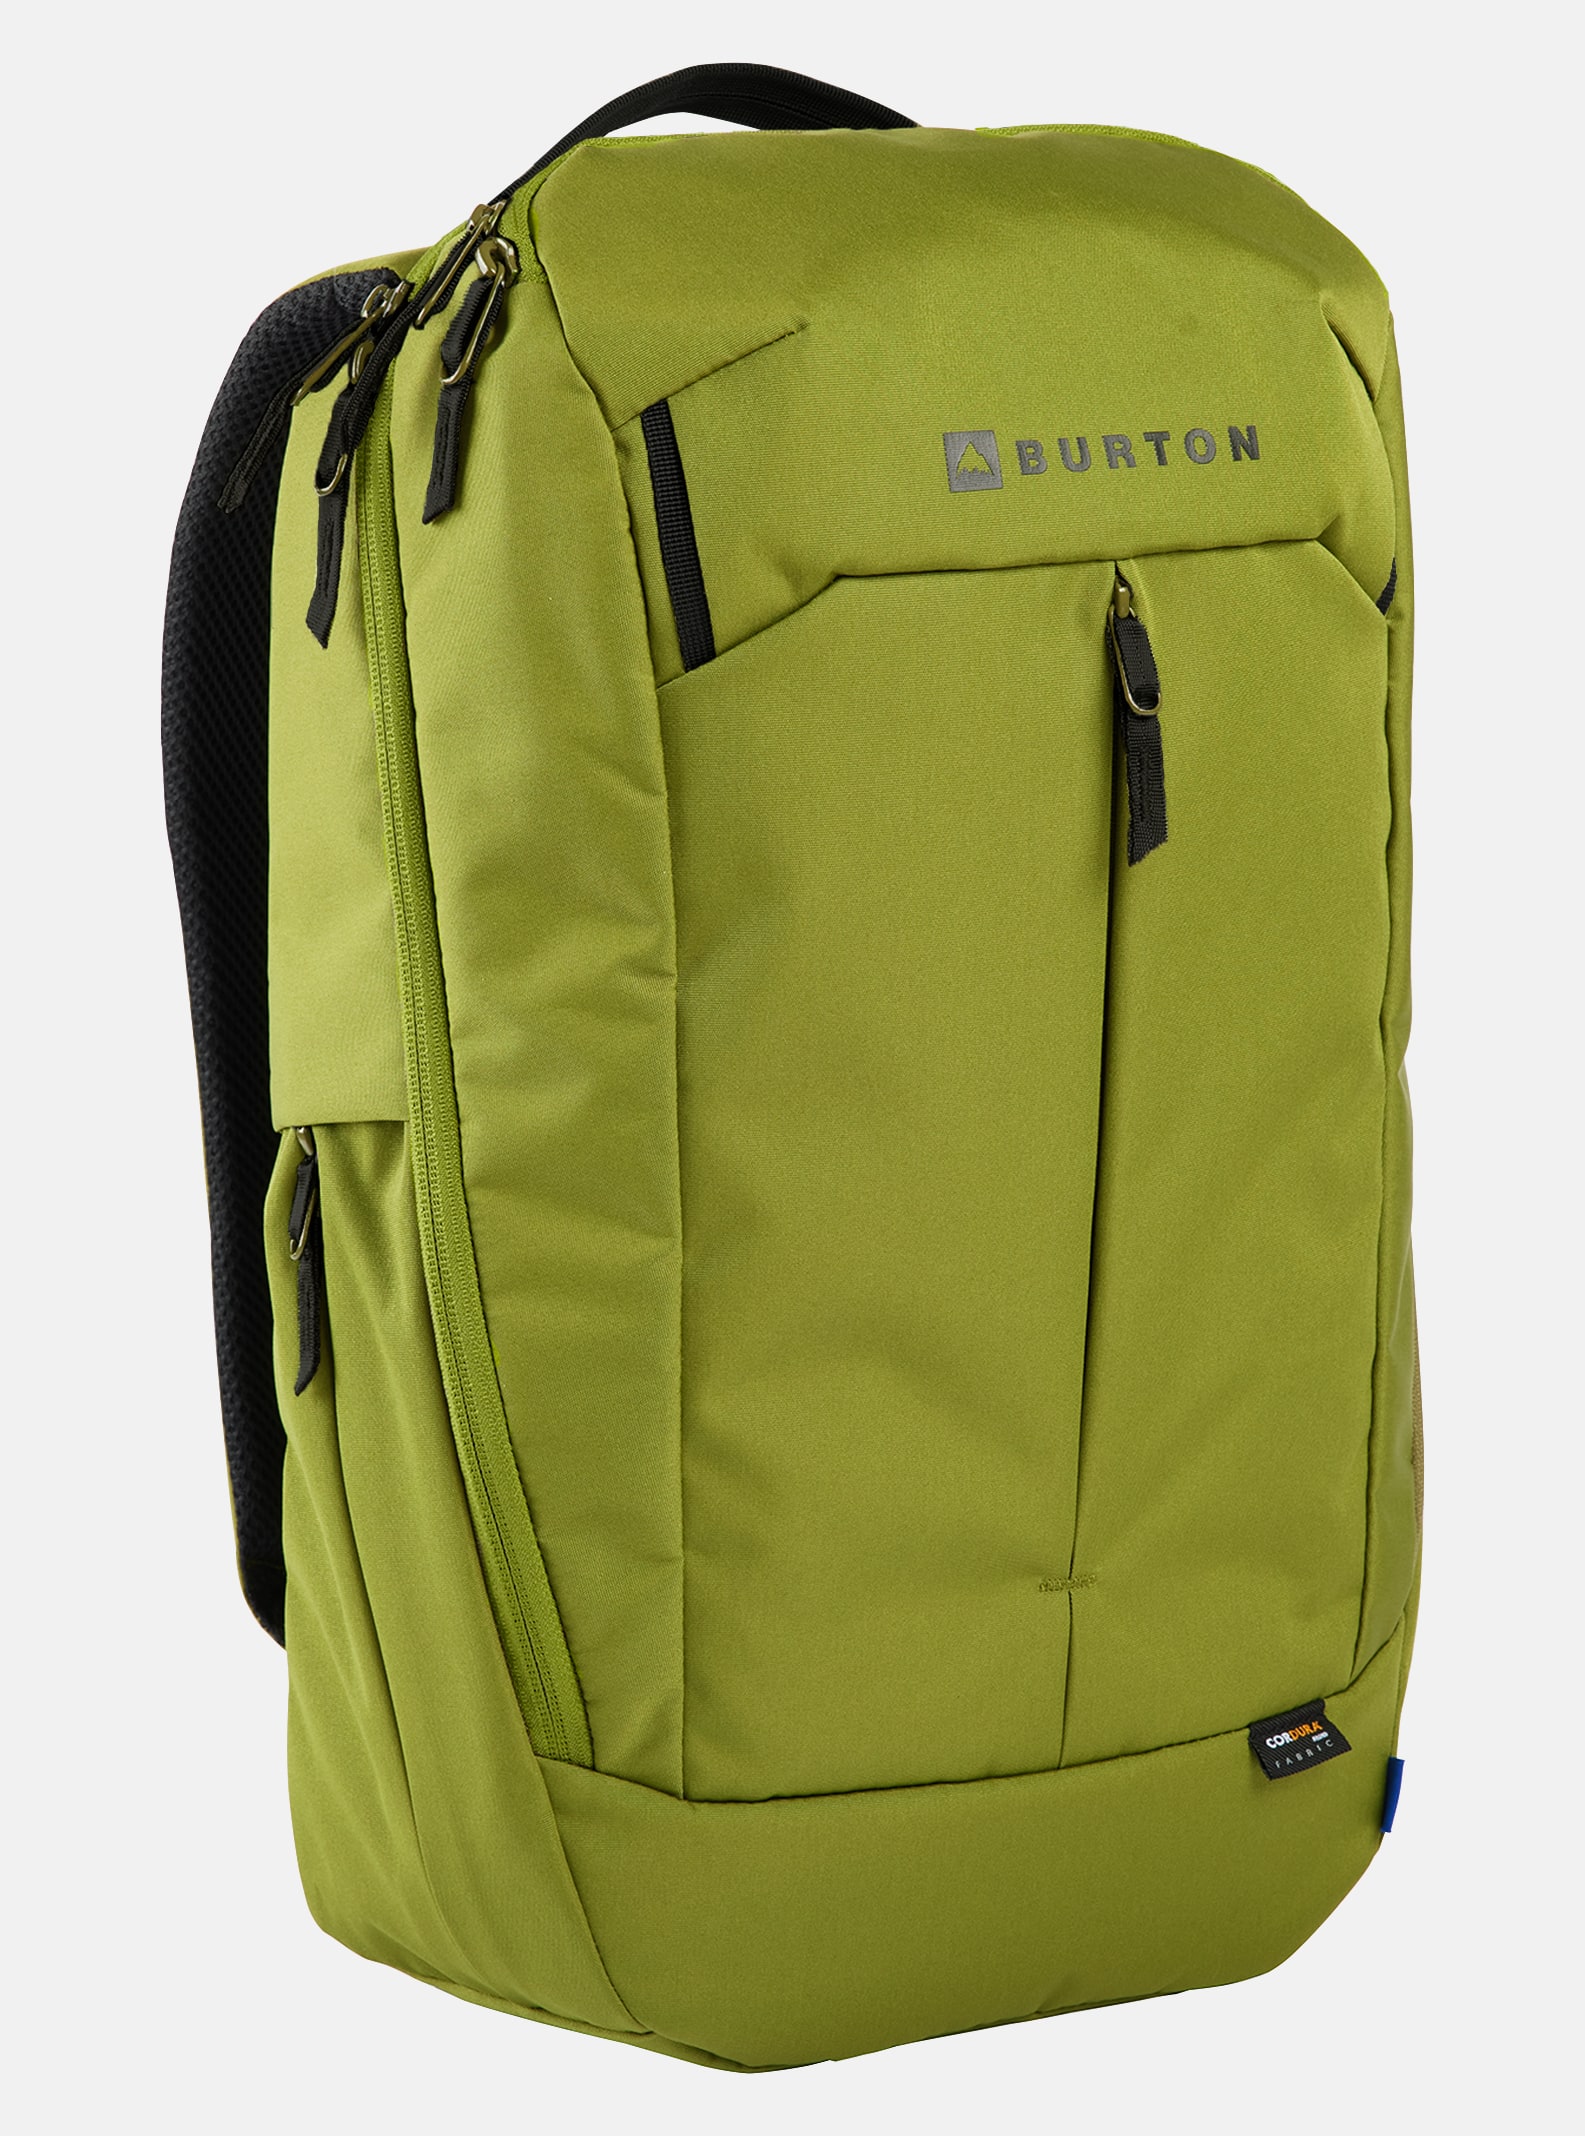 Outdoor & Snowboard Backpacks | Burton Snowboards DE